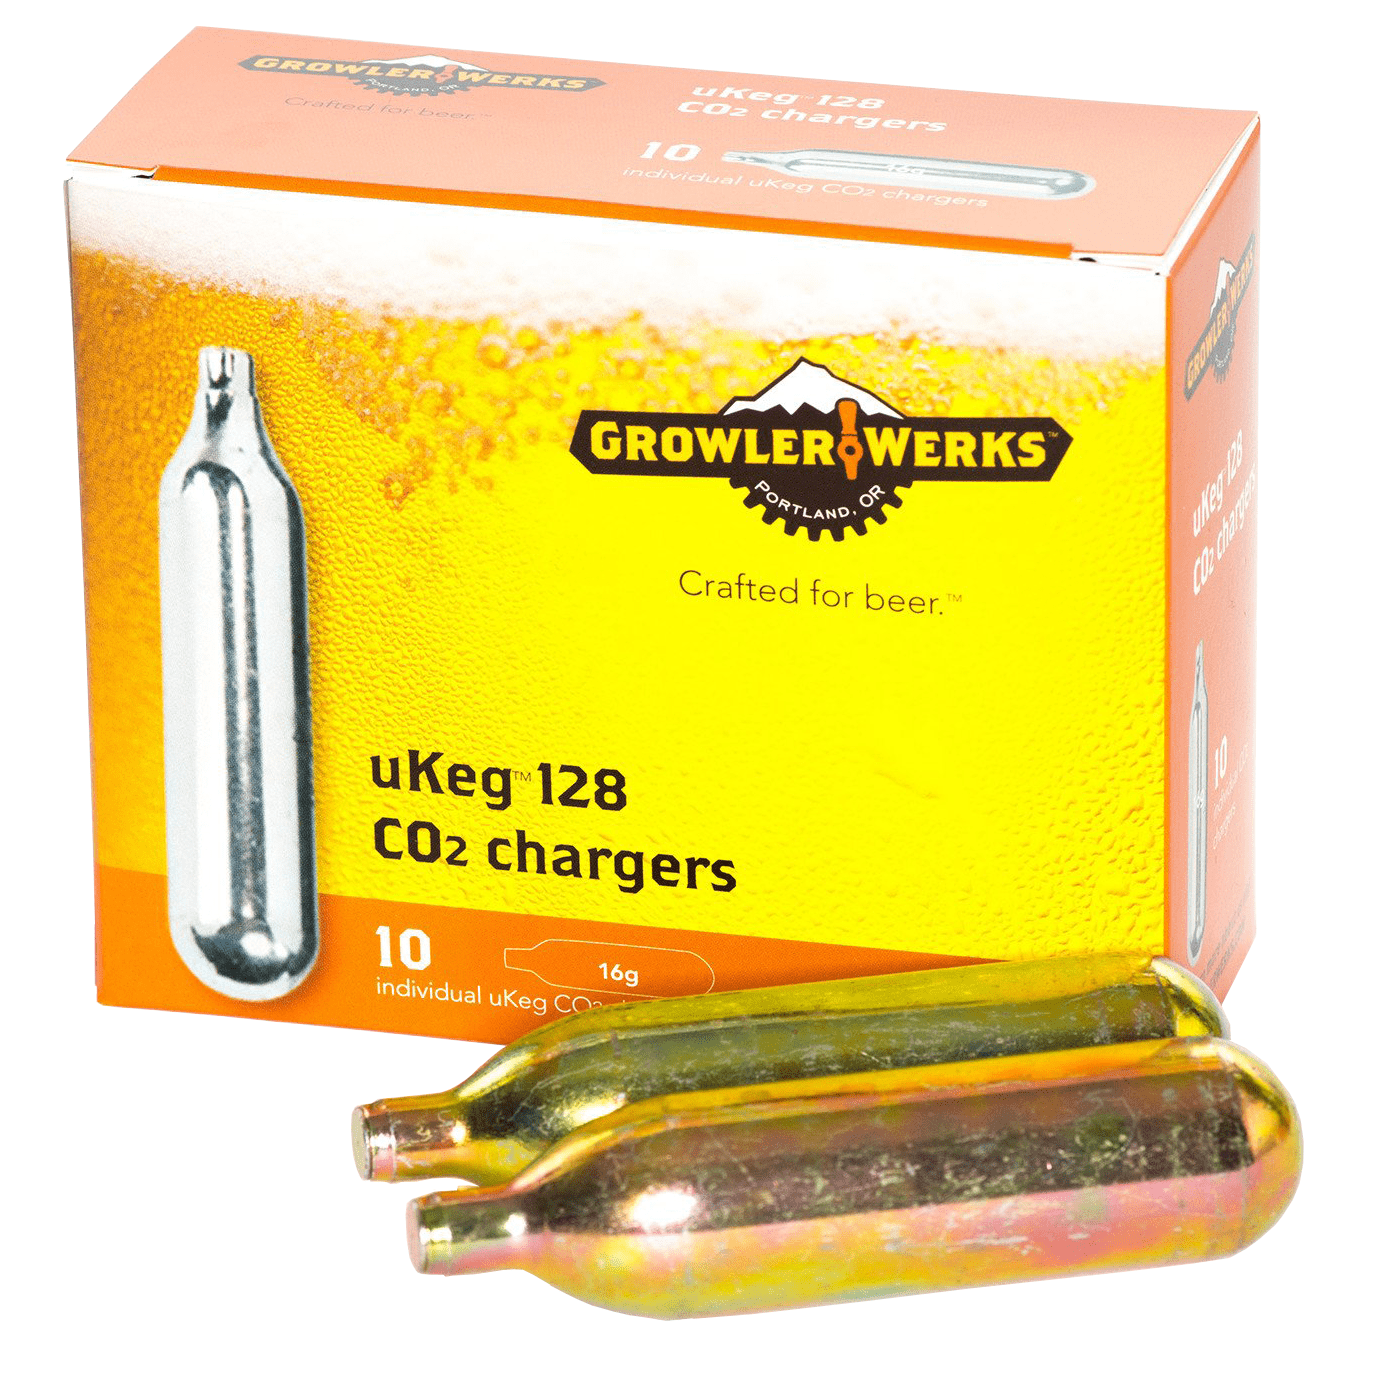 Growlerwerks 16 Gram Co2 Refill Cartridges